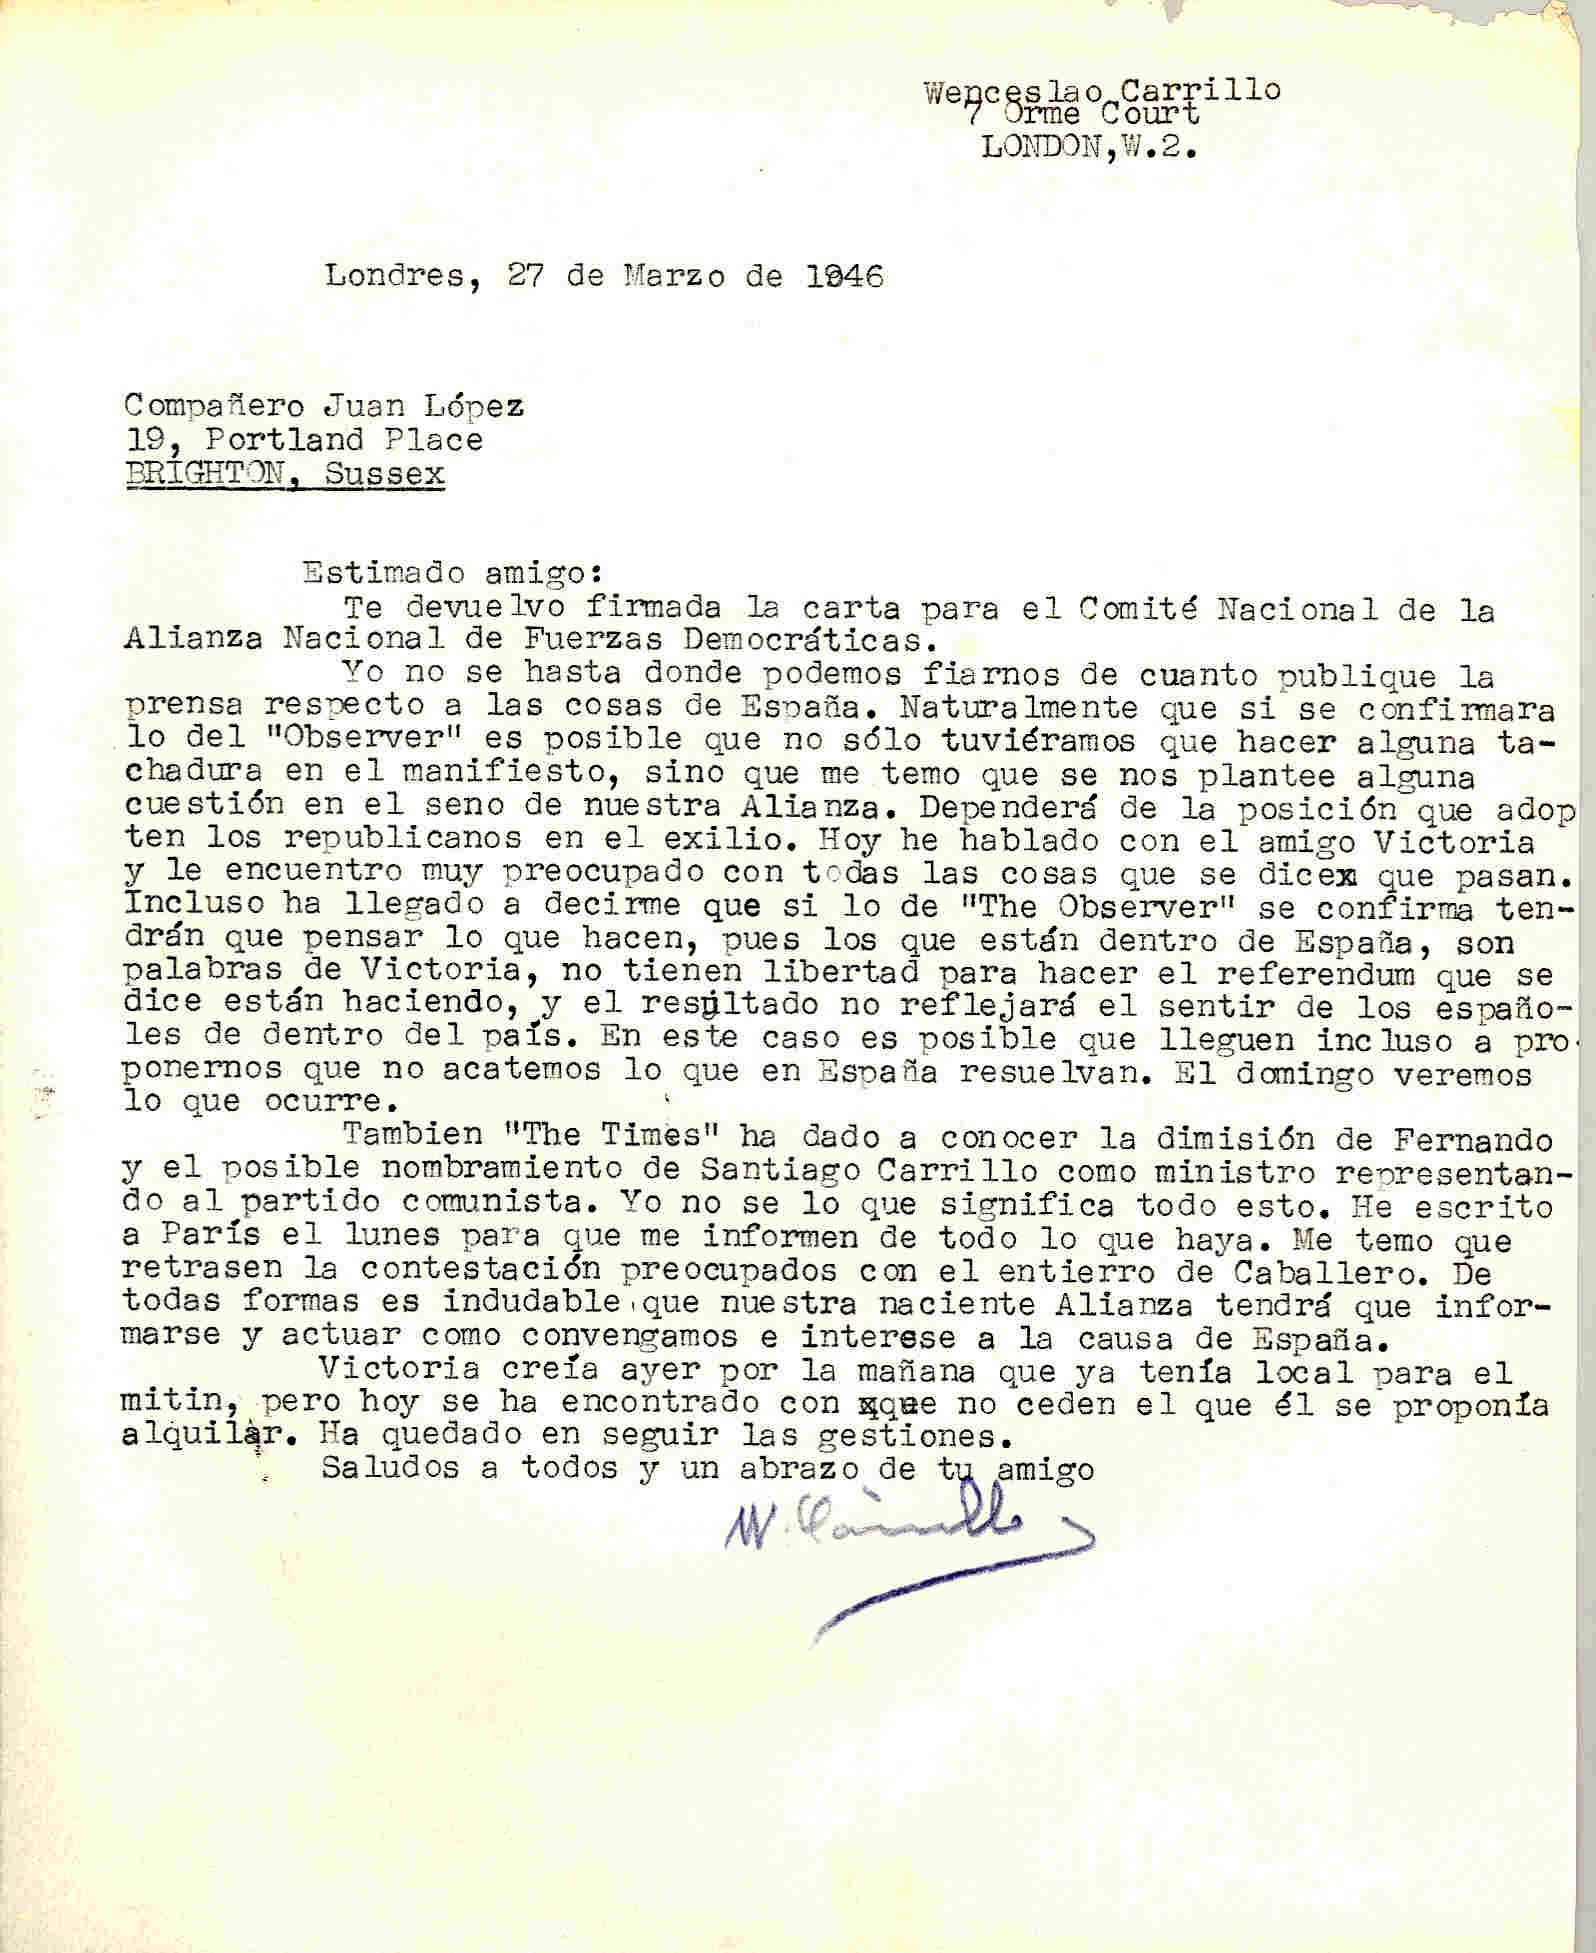 Carta de Wenceslao Carrillo en la que cuestiona el plebiscito sobre Monarquía o República promovido por la Alianza en España, y la postura a adoptar por la de Gran Bretaña; comenta los cambios en el Gobierno Giral y los actos del 14 de abril